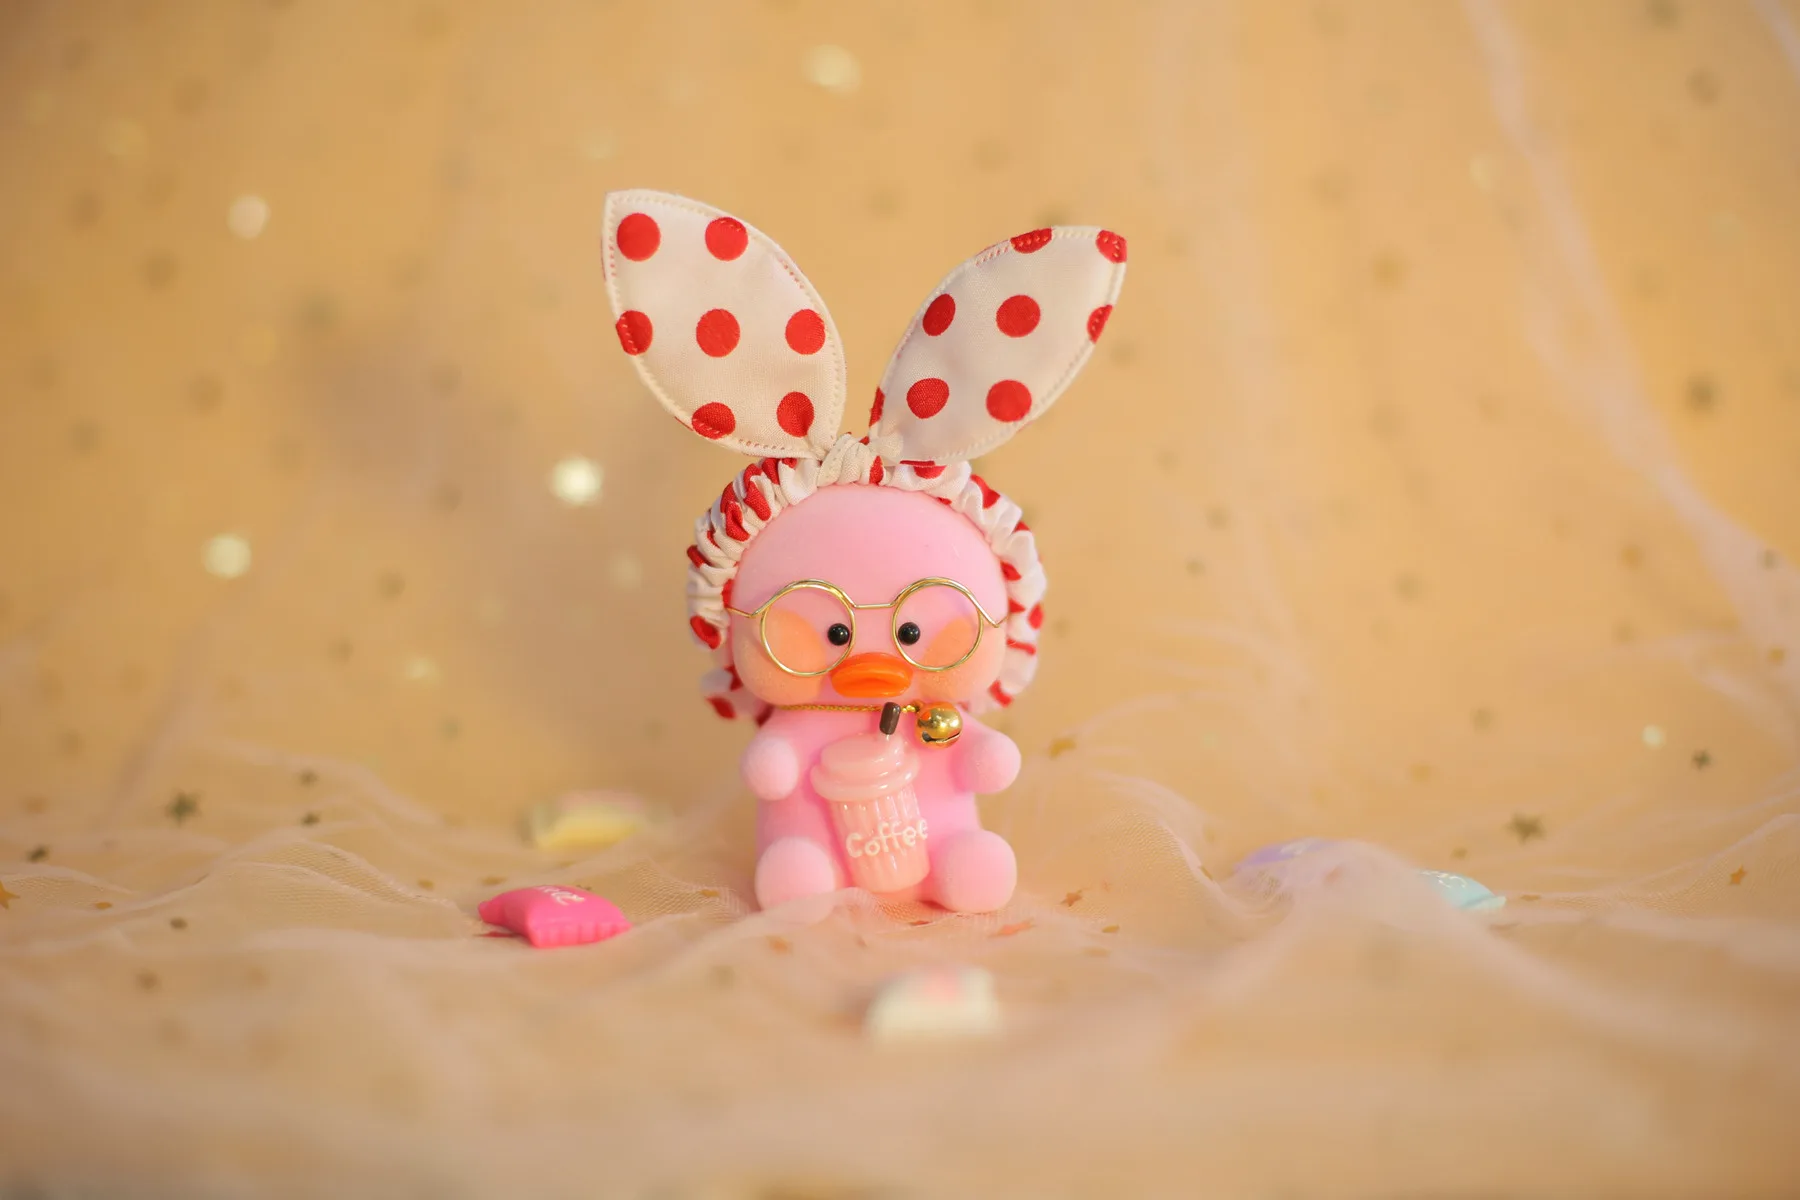 Kawaii подвеска с форме утки брелок мультфильм милый утка автомобиль Декор животные куклы девочка игрушки подарок на день рождения для детей милые плюшевые брелоки